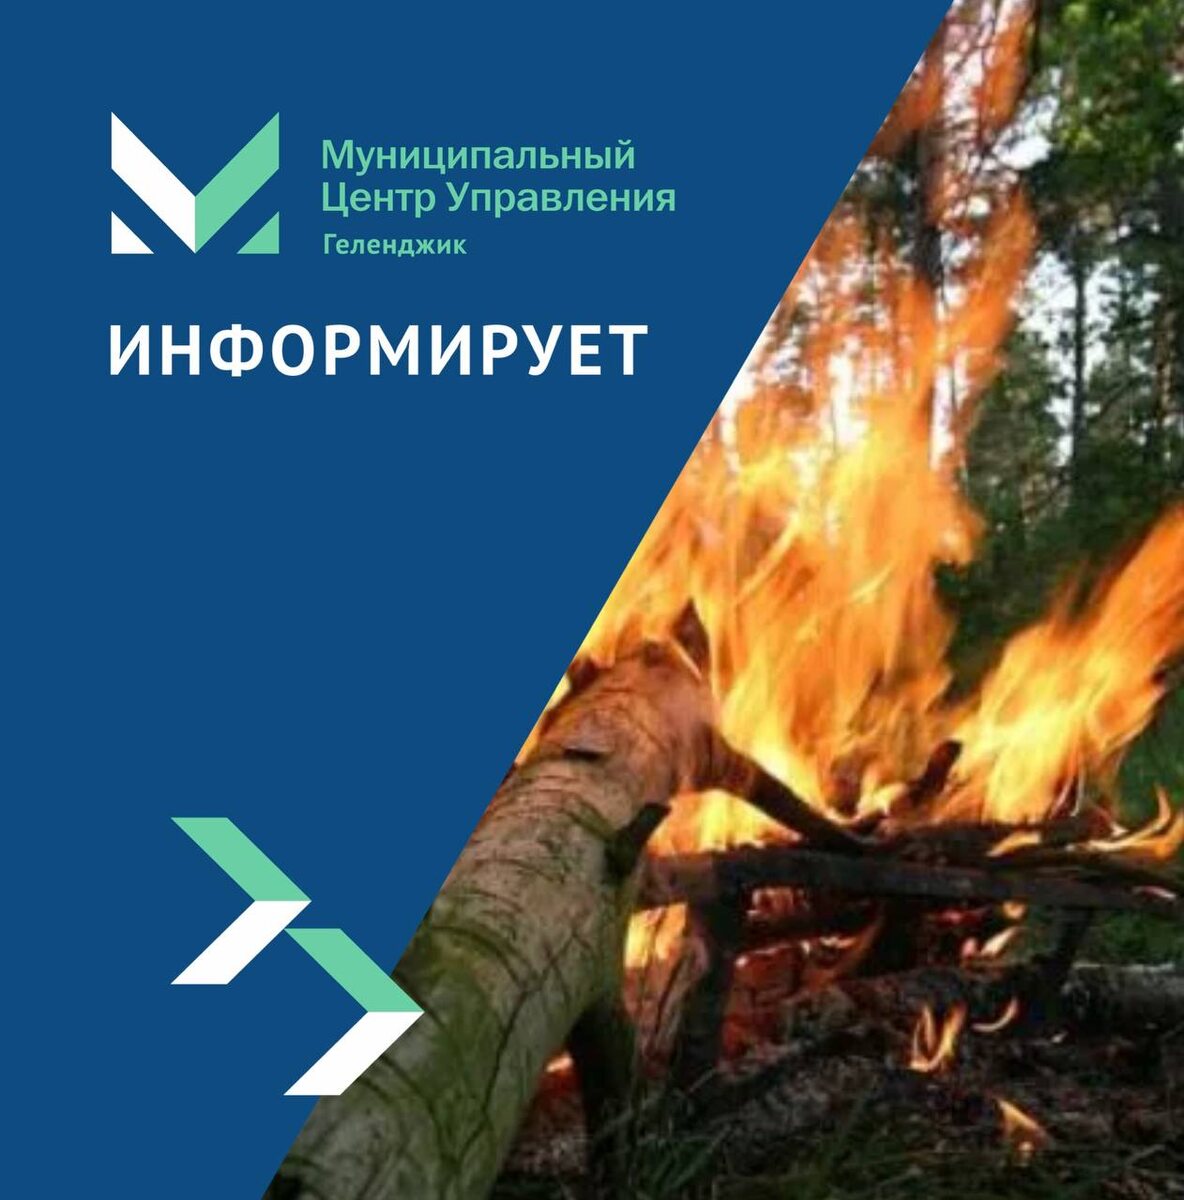 По информации ЕДДС, 28 и 29 июня местами в Краснодарском крае и на Черноморском побережье ожидается высокая пожароопасность 4 класса.

Запрещено разжигание костров и сжигание мусора.